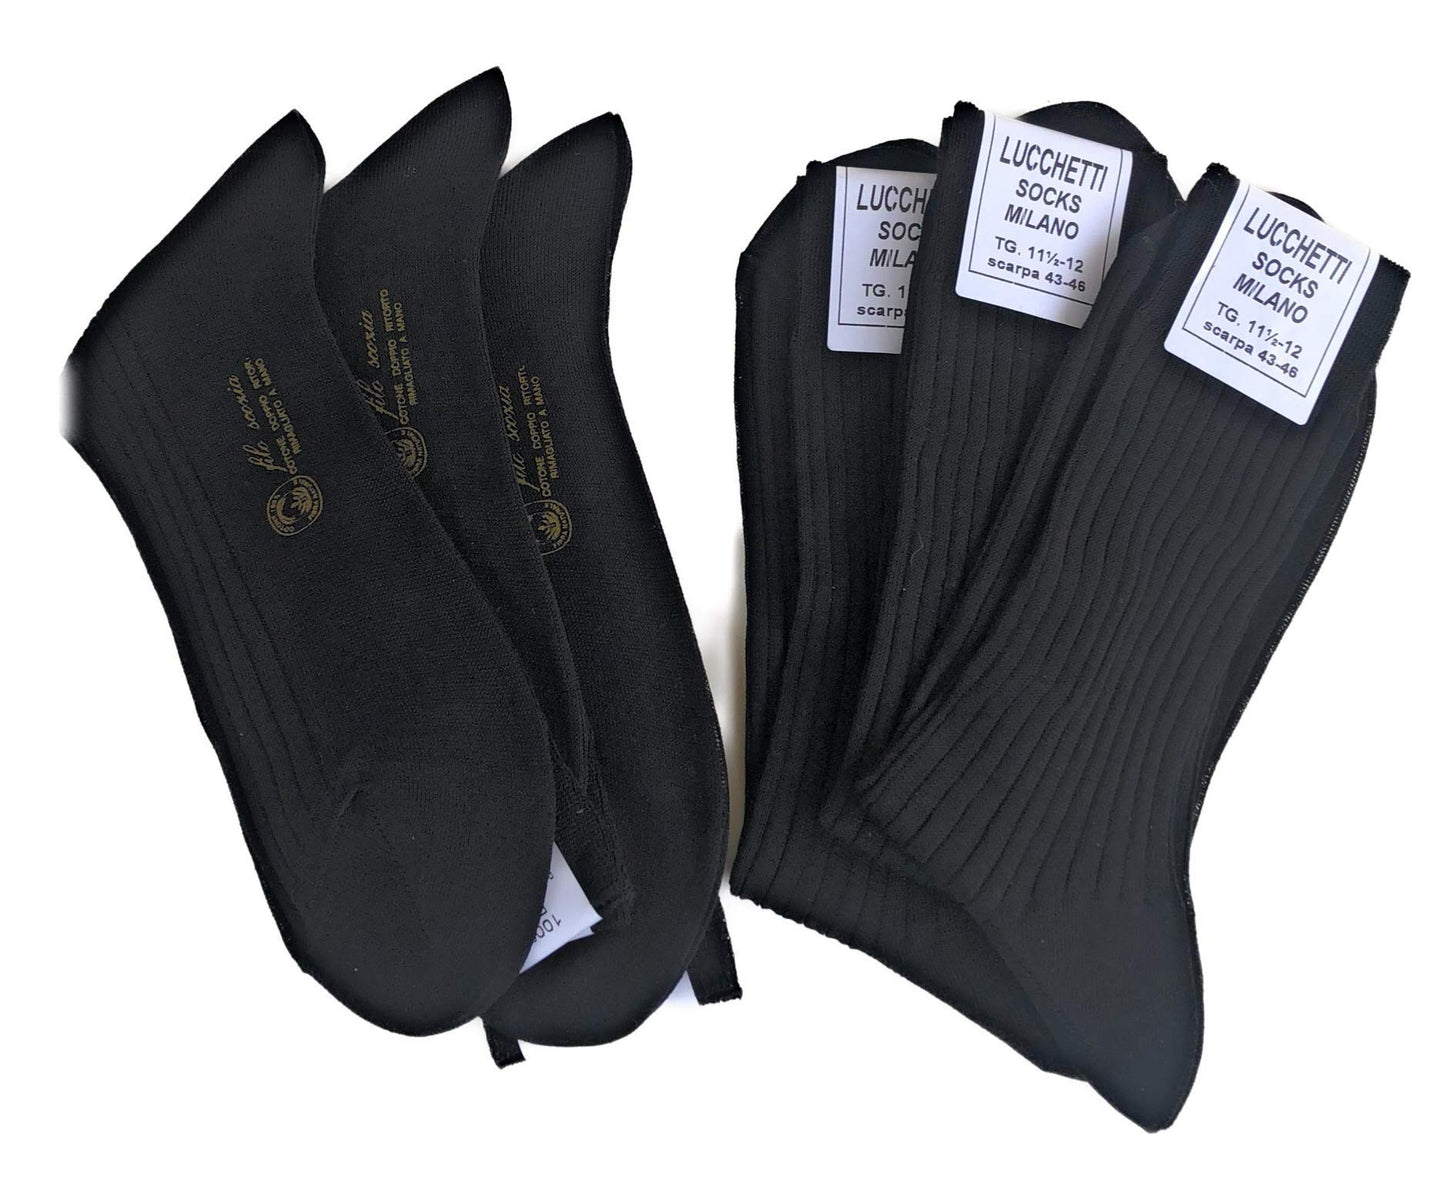 Lucchetti Socks Milano 6 PAIA calze da uomo CORTE filo di scozia 100% cotone rimagliate Made in Italy